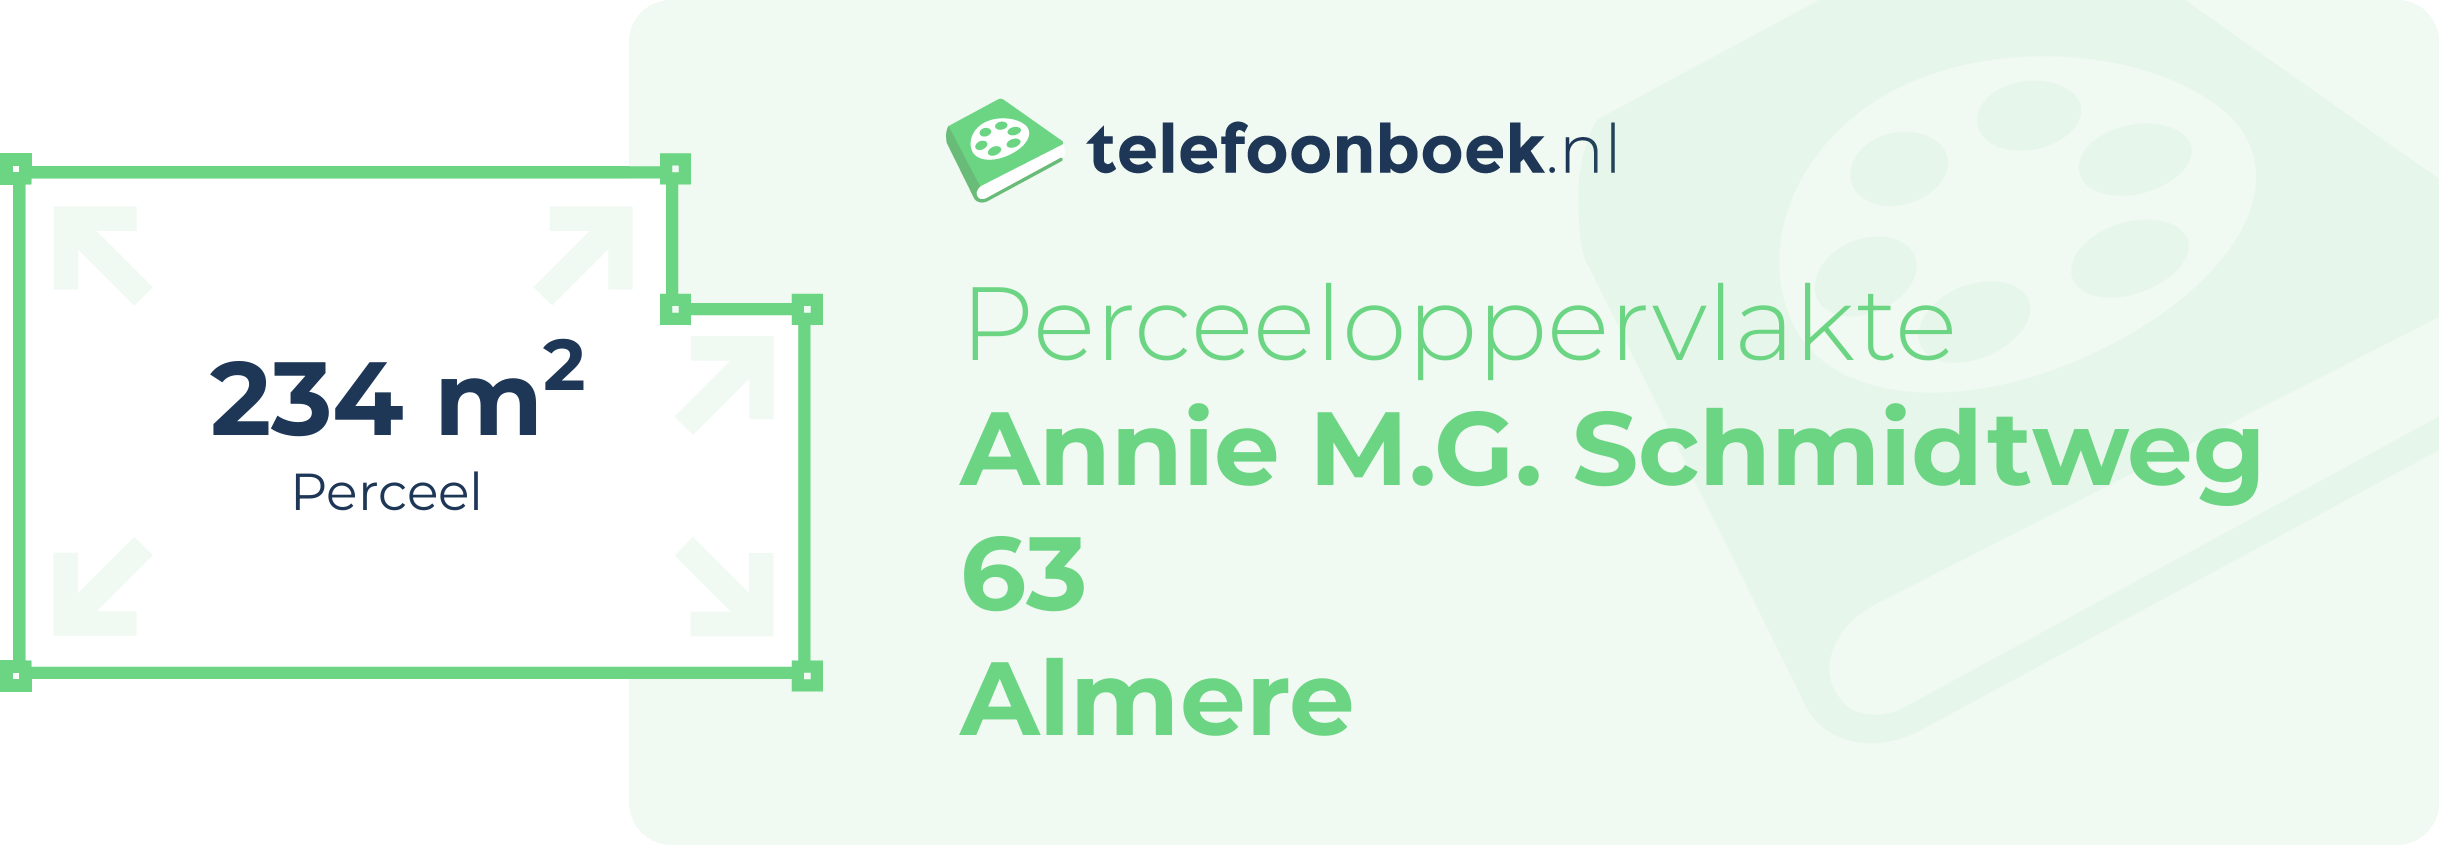 Perceeloppervlakte Annie M.G. Schmidtweg 63 Almere